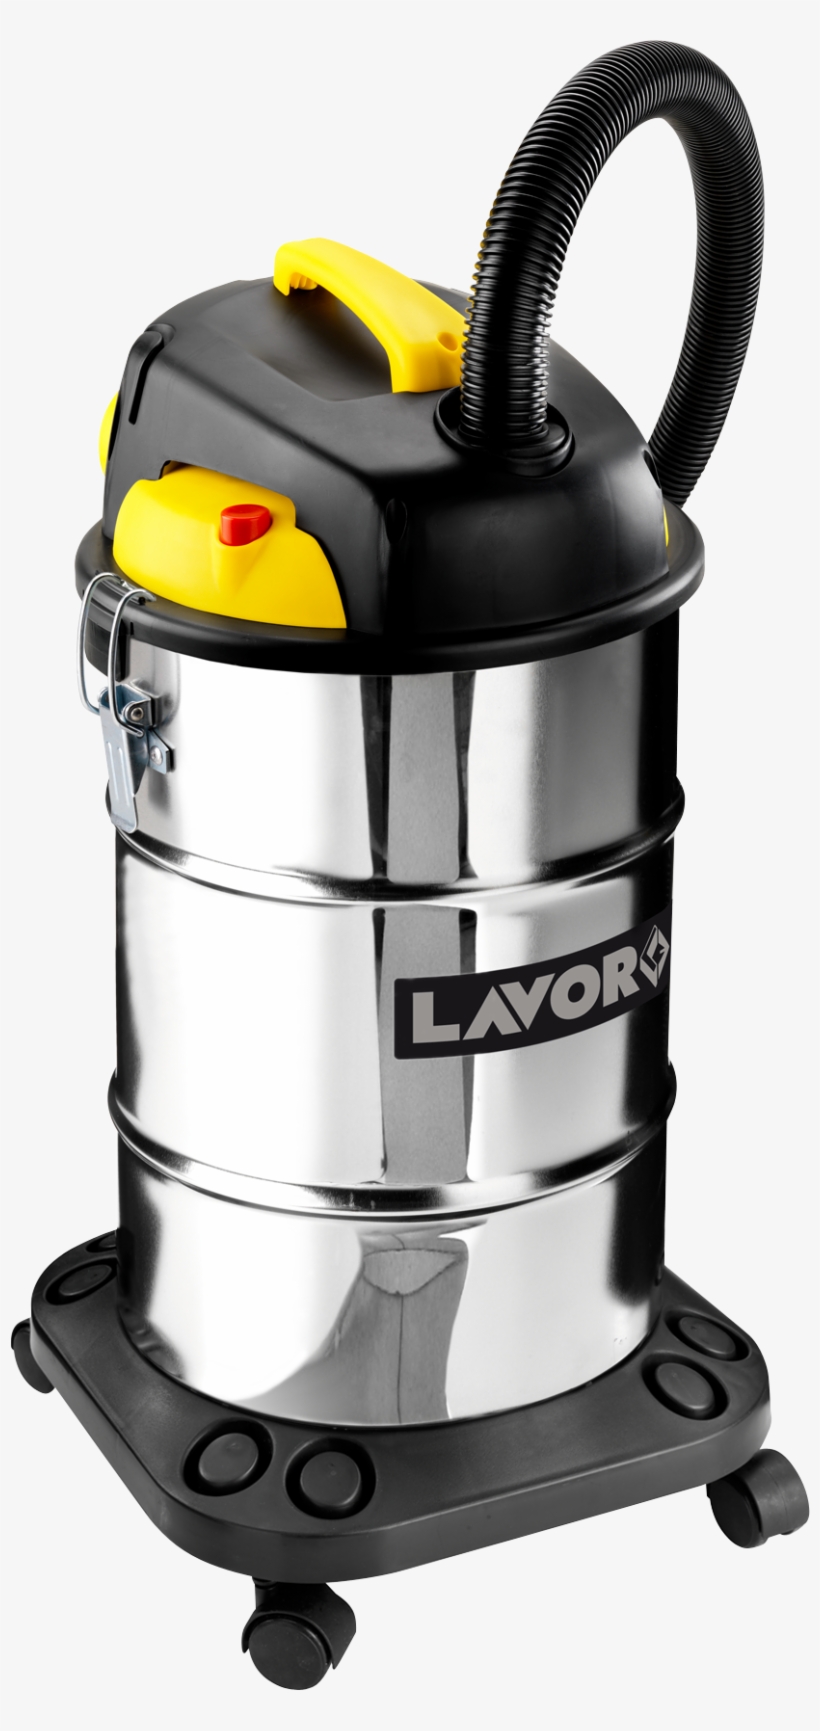 Vac 30 X - Lavor Vacuum Cleaner, transparent png #826741